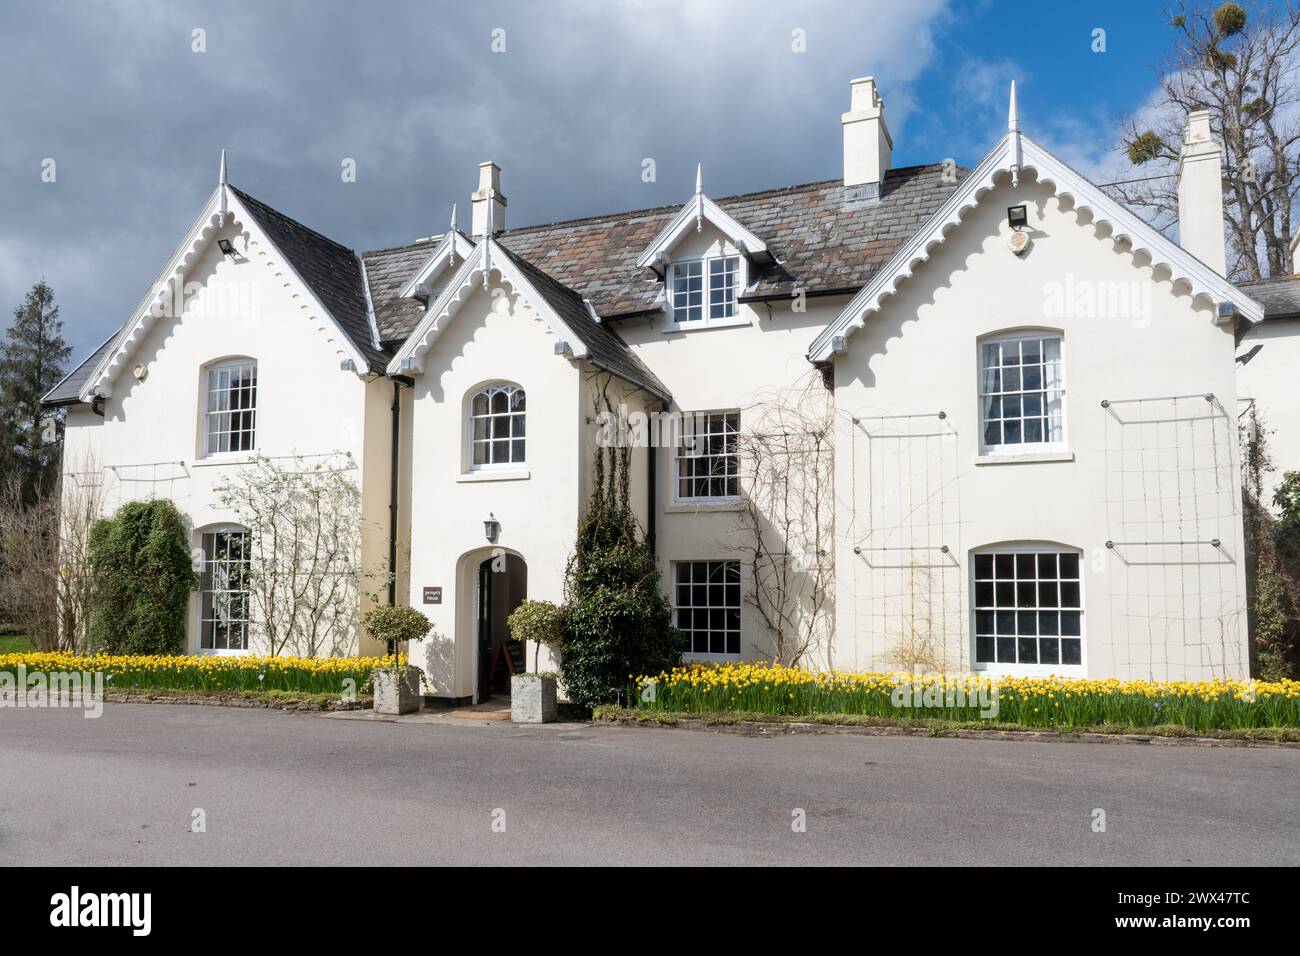 Jermyn's House presso Sir Harold Hillier Gardens, un'attrazione turistica nell'Hampshire, Inghilterra, Regno Unito, con narcisi in fiore durante marzo o primavera Foto Stock